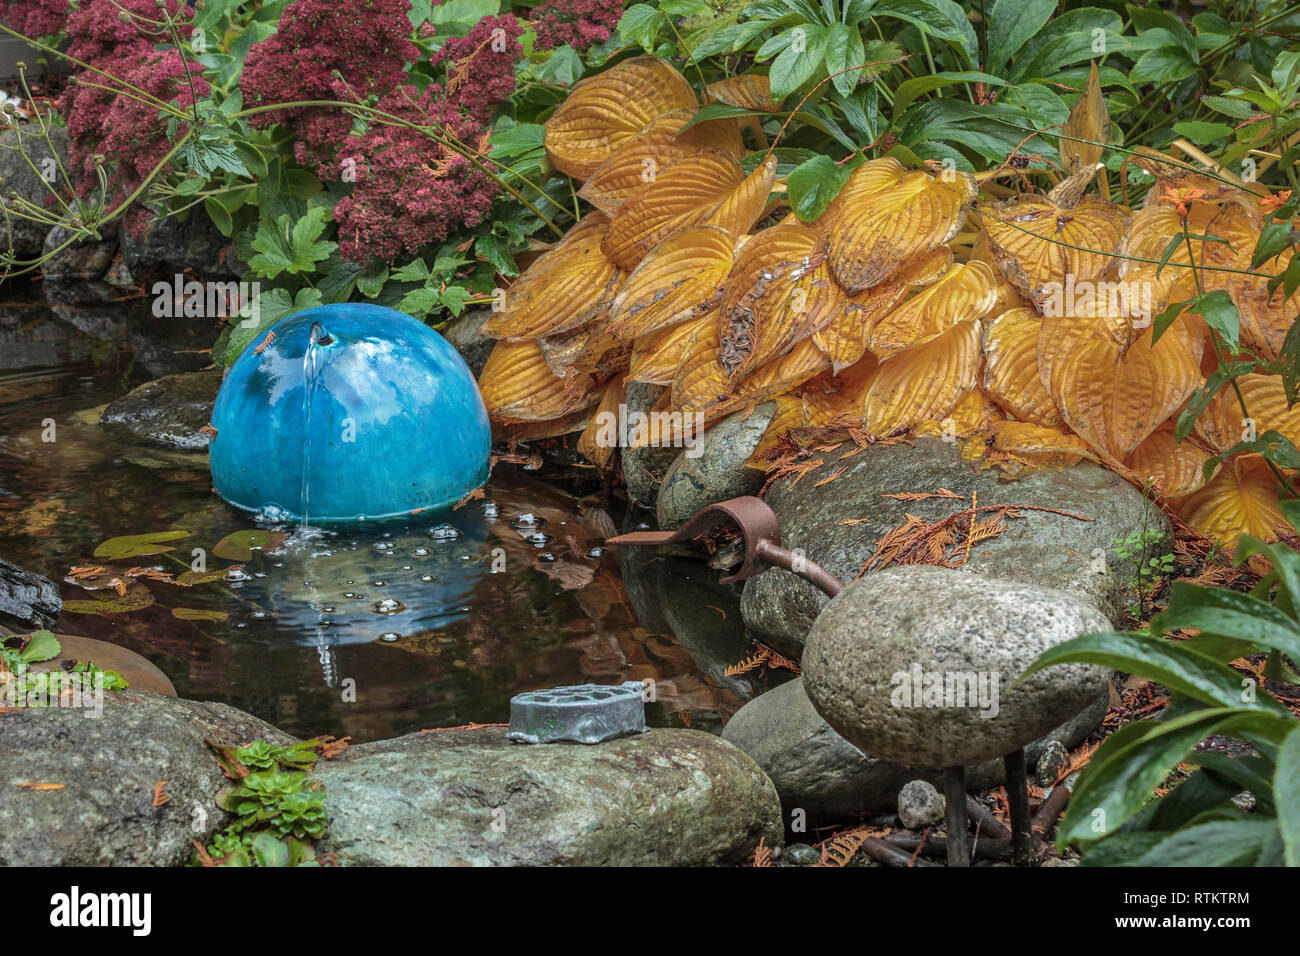 Glatte Felsen und dichten Laub, einschließlich helle orange Hostas, umgeben einen kleinen Gartenteich, hat einen runden, blau Keramik Wasser bubbler (Herbst). Stockfoto